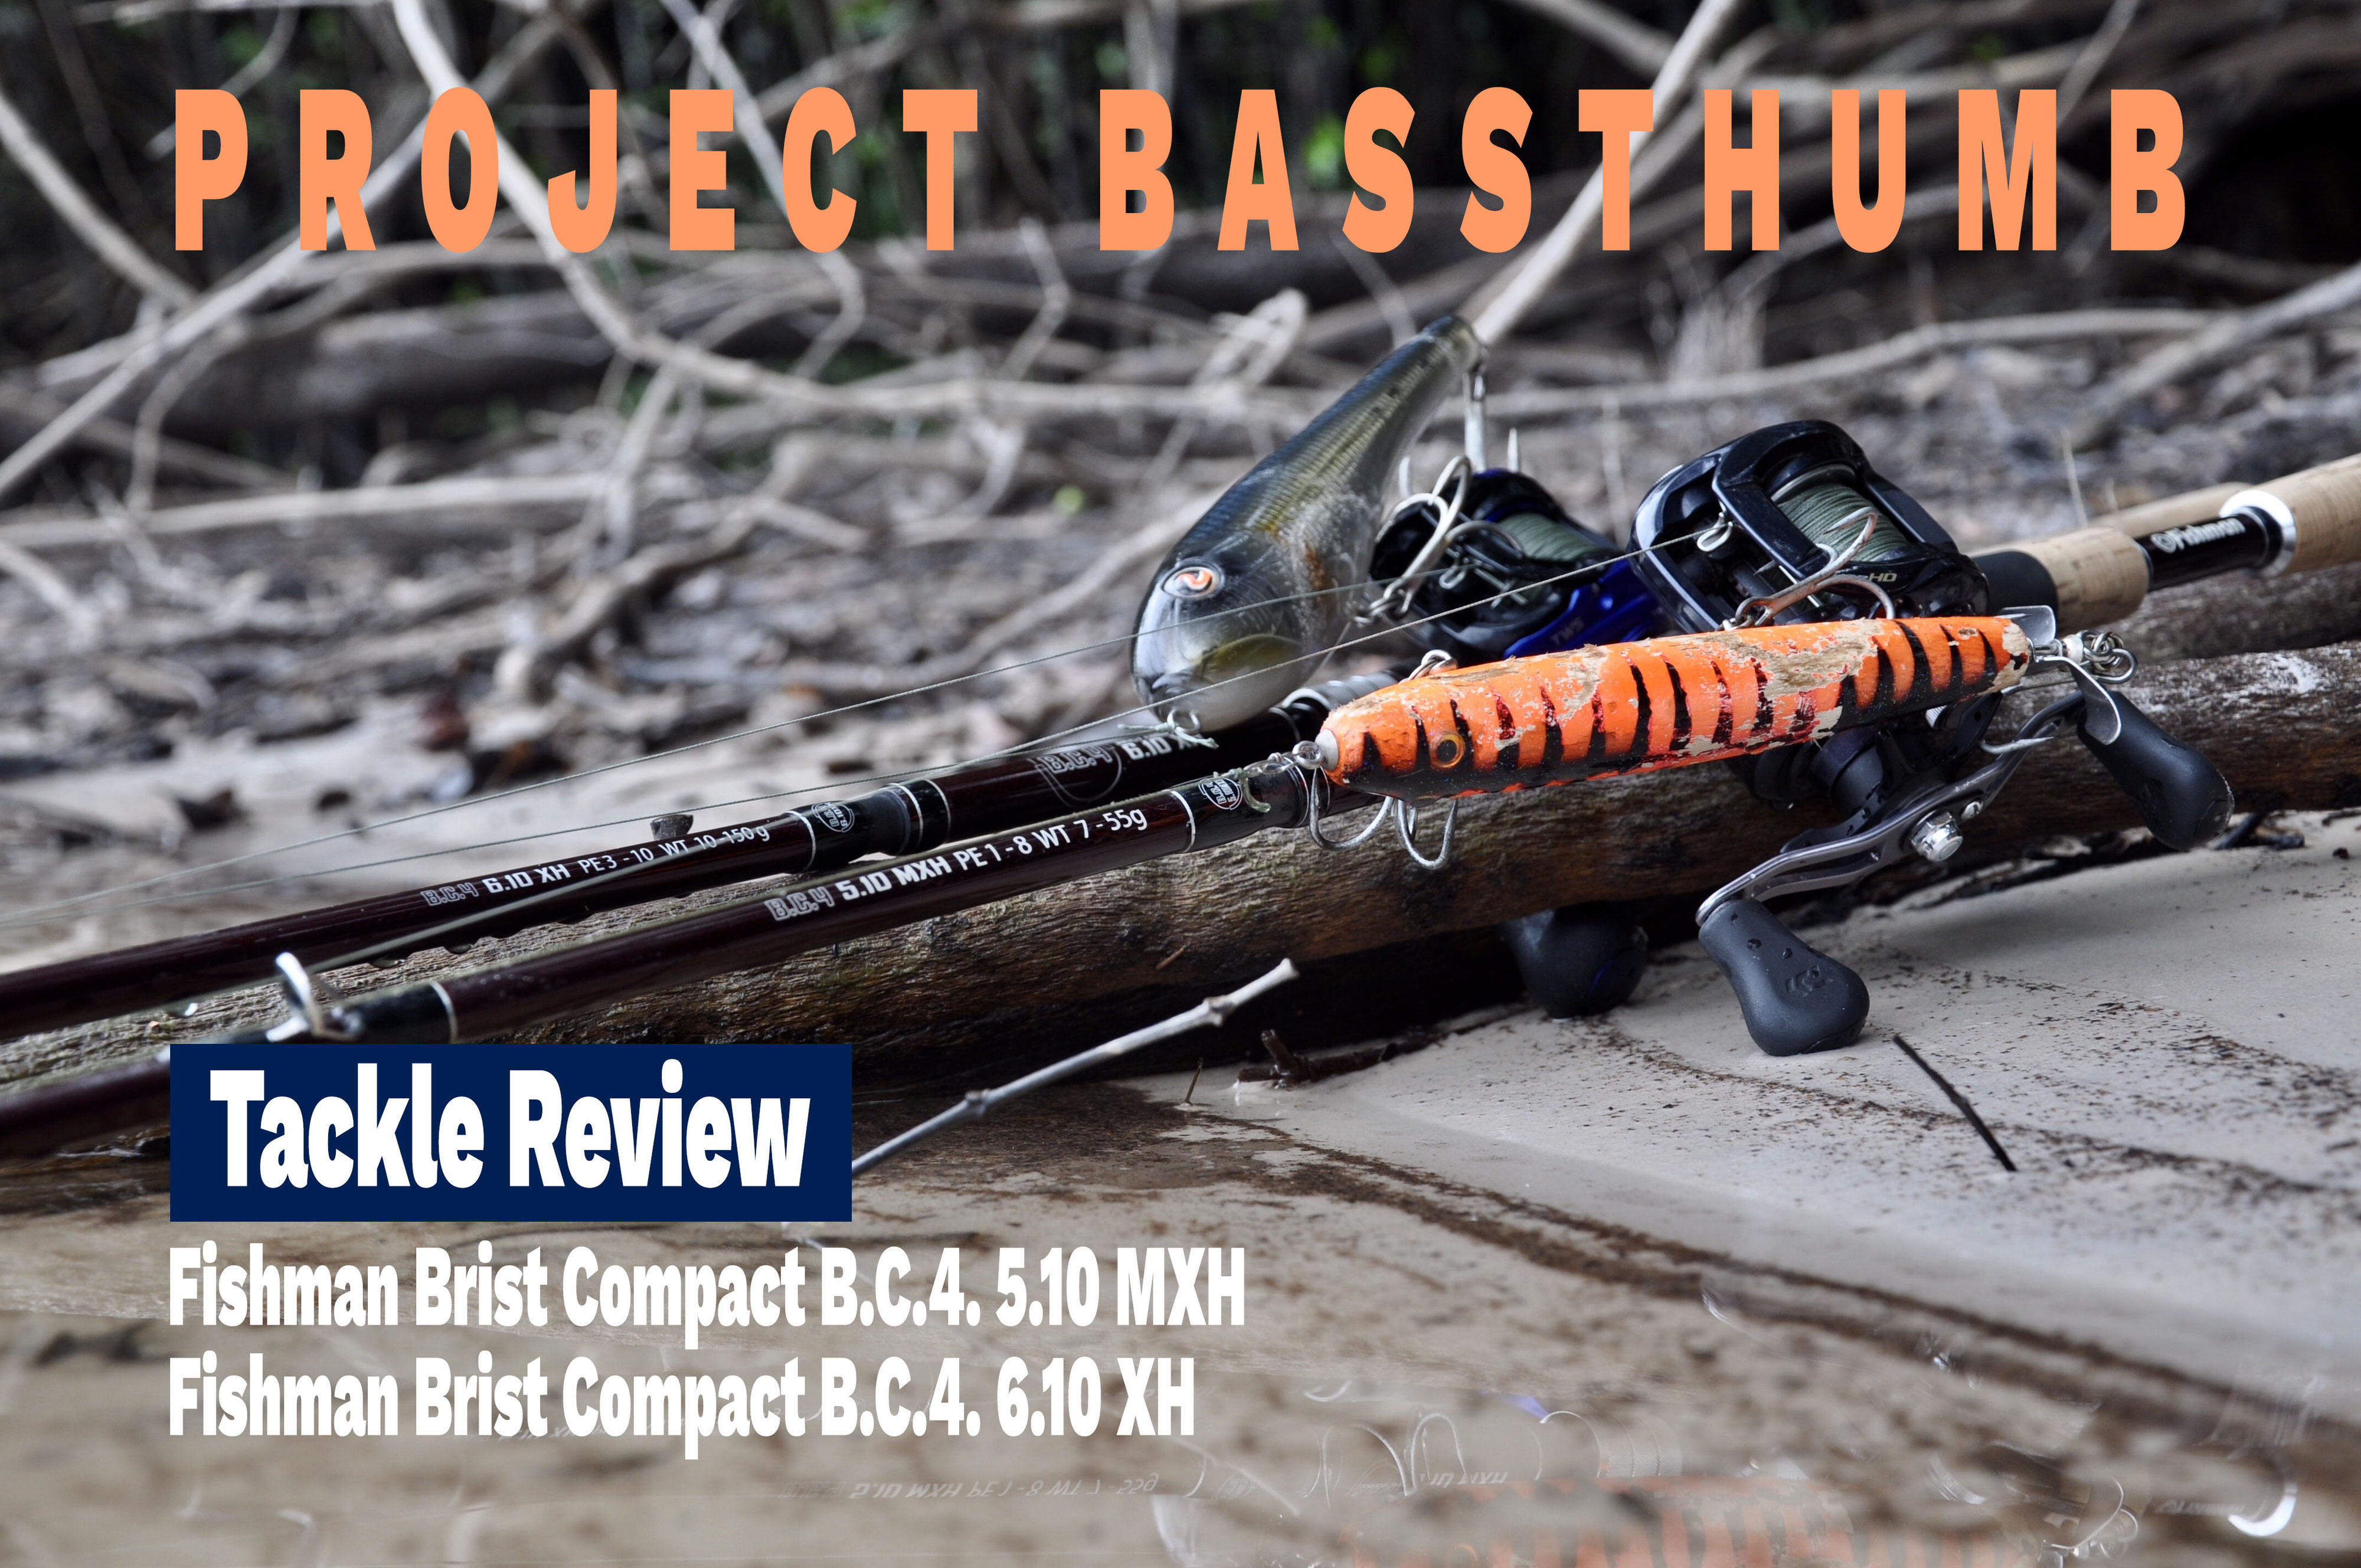 Review: Fishman Brist B.C.4 MXH & XH - projetbassthumb